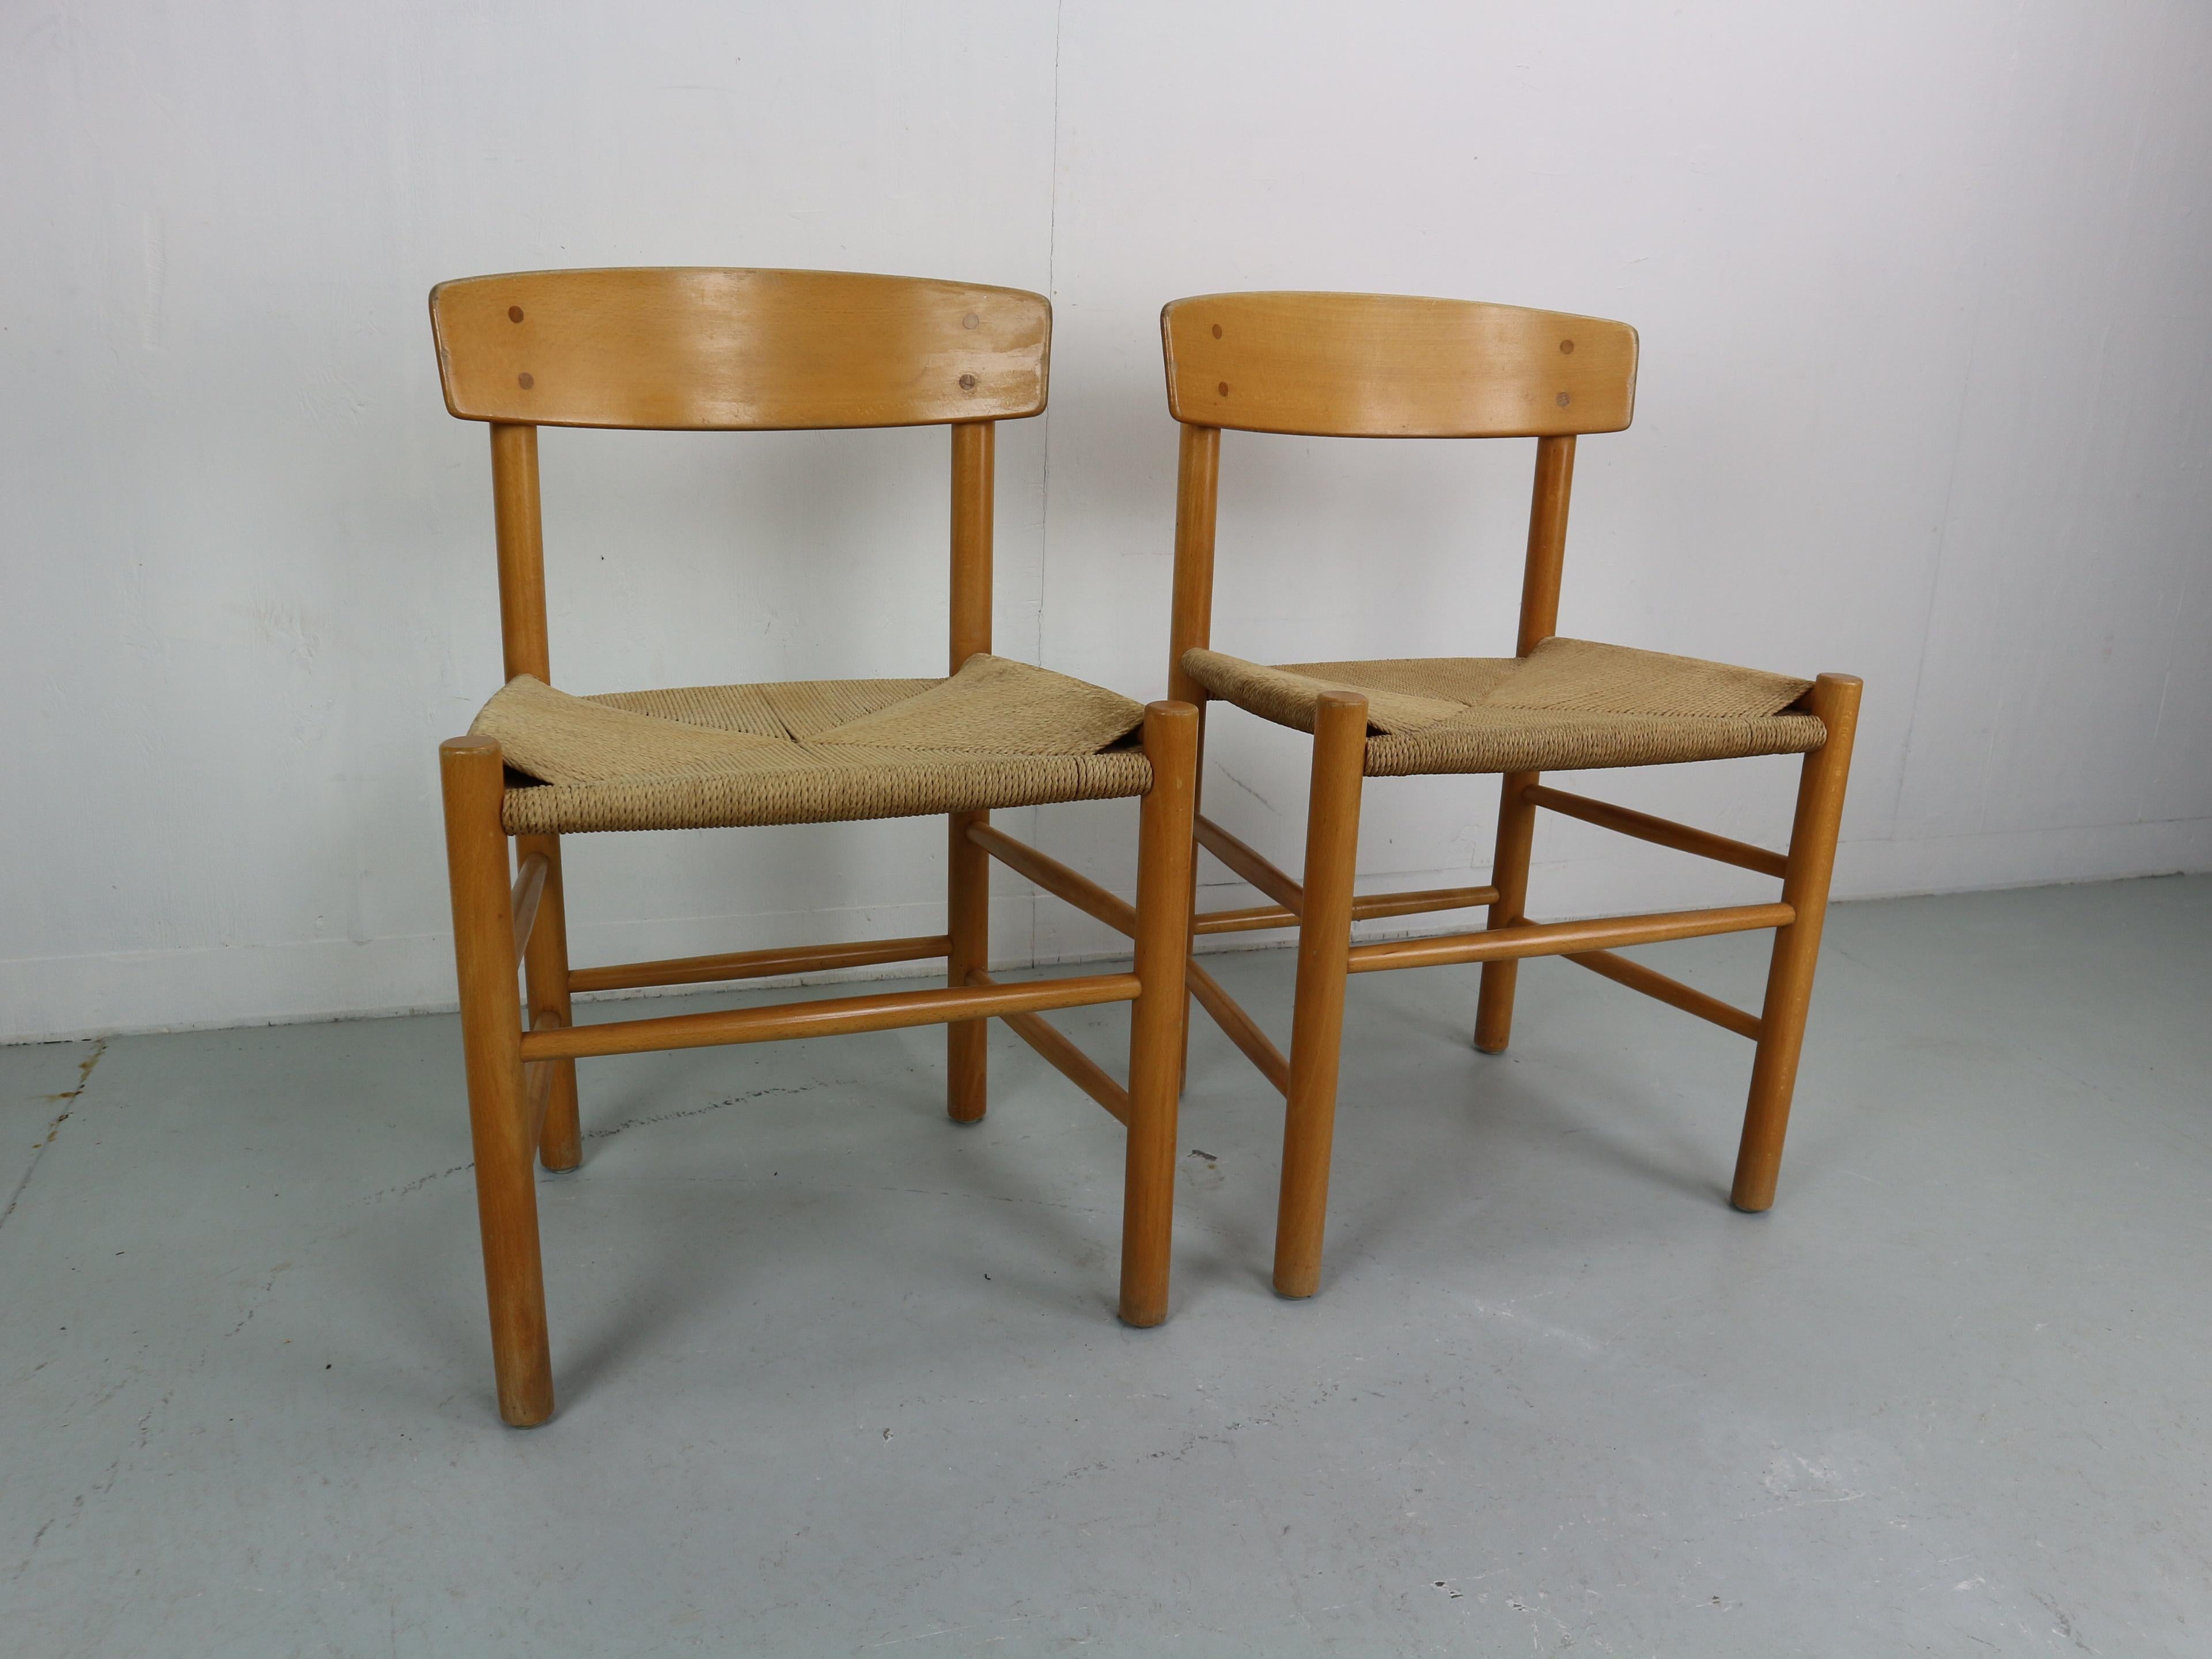 Les chaises J39 ont été conçues par Borge Borg et produites par FDB Mobler depuis 1947.
Ces chaises sont anciennes et constituent la première production de FDB Mobler. Le design s'inspire du mobilier américain Shakers.
Il est fait de chêne massif